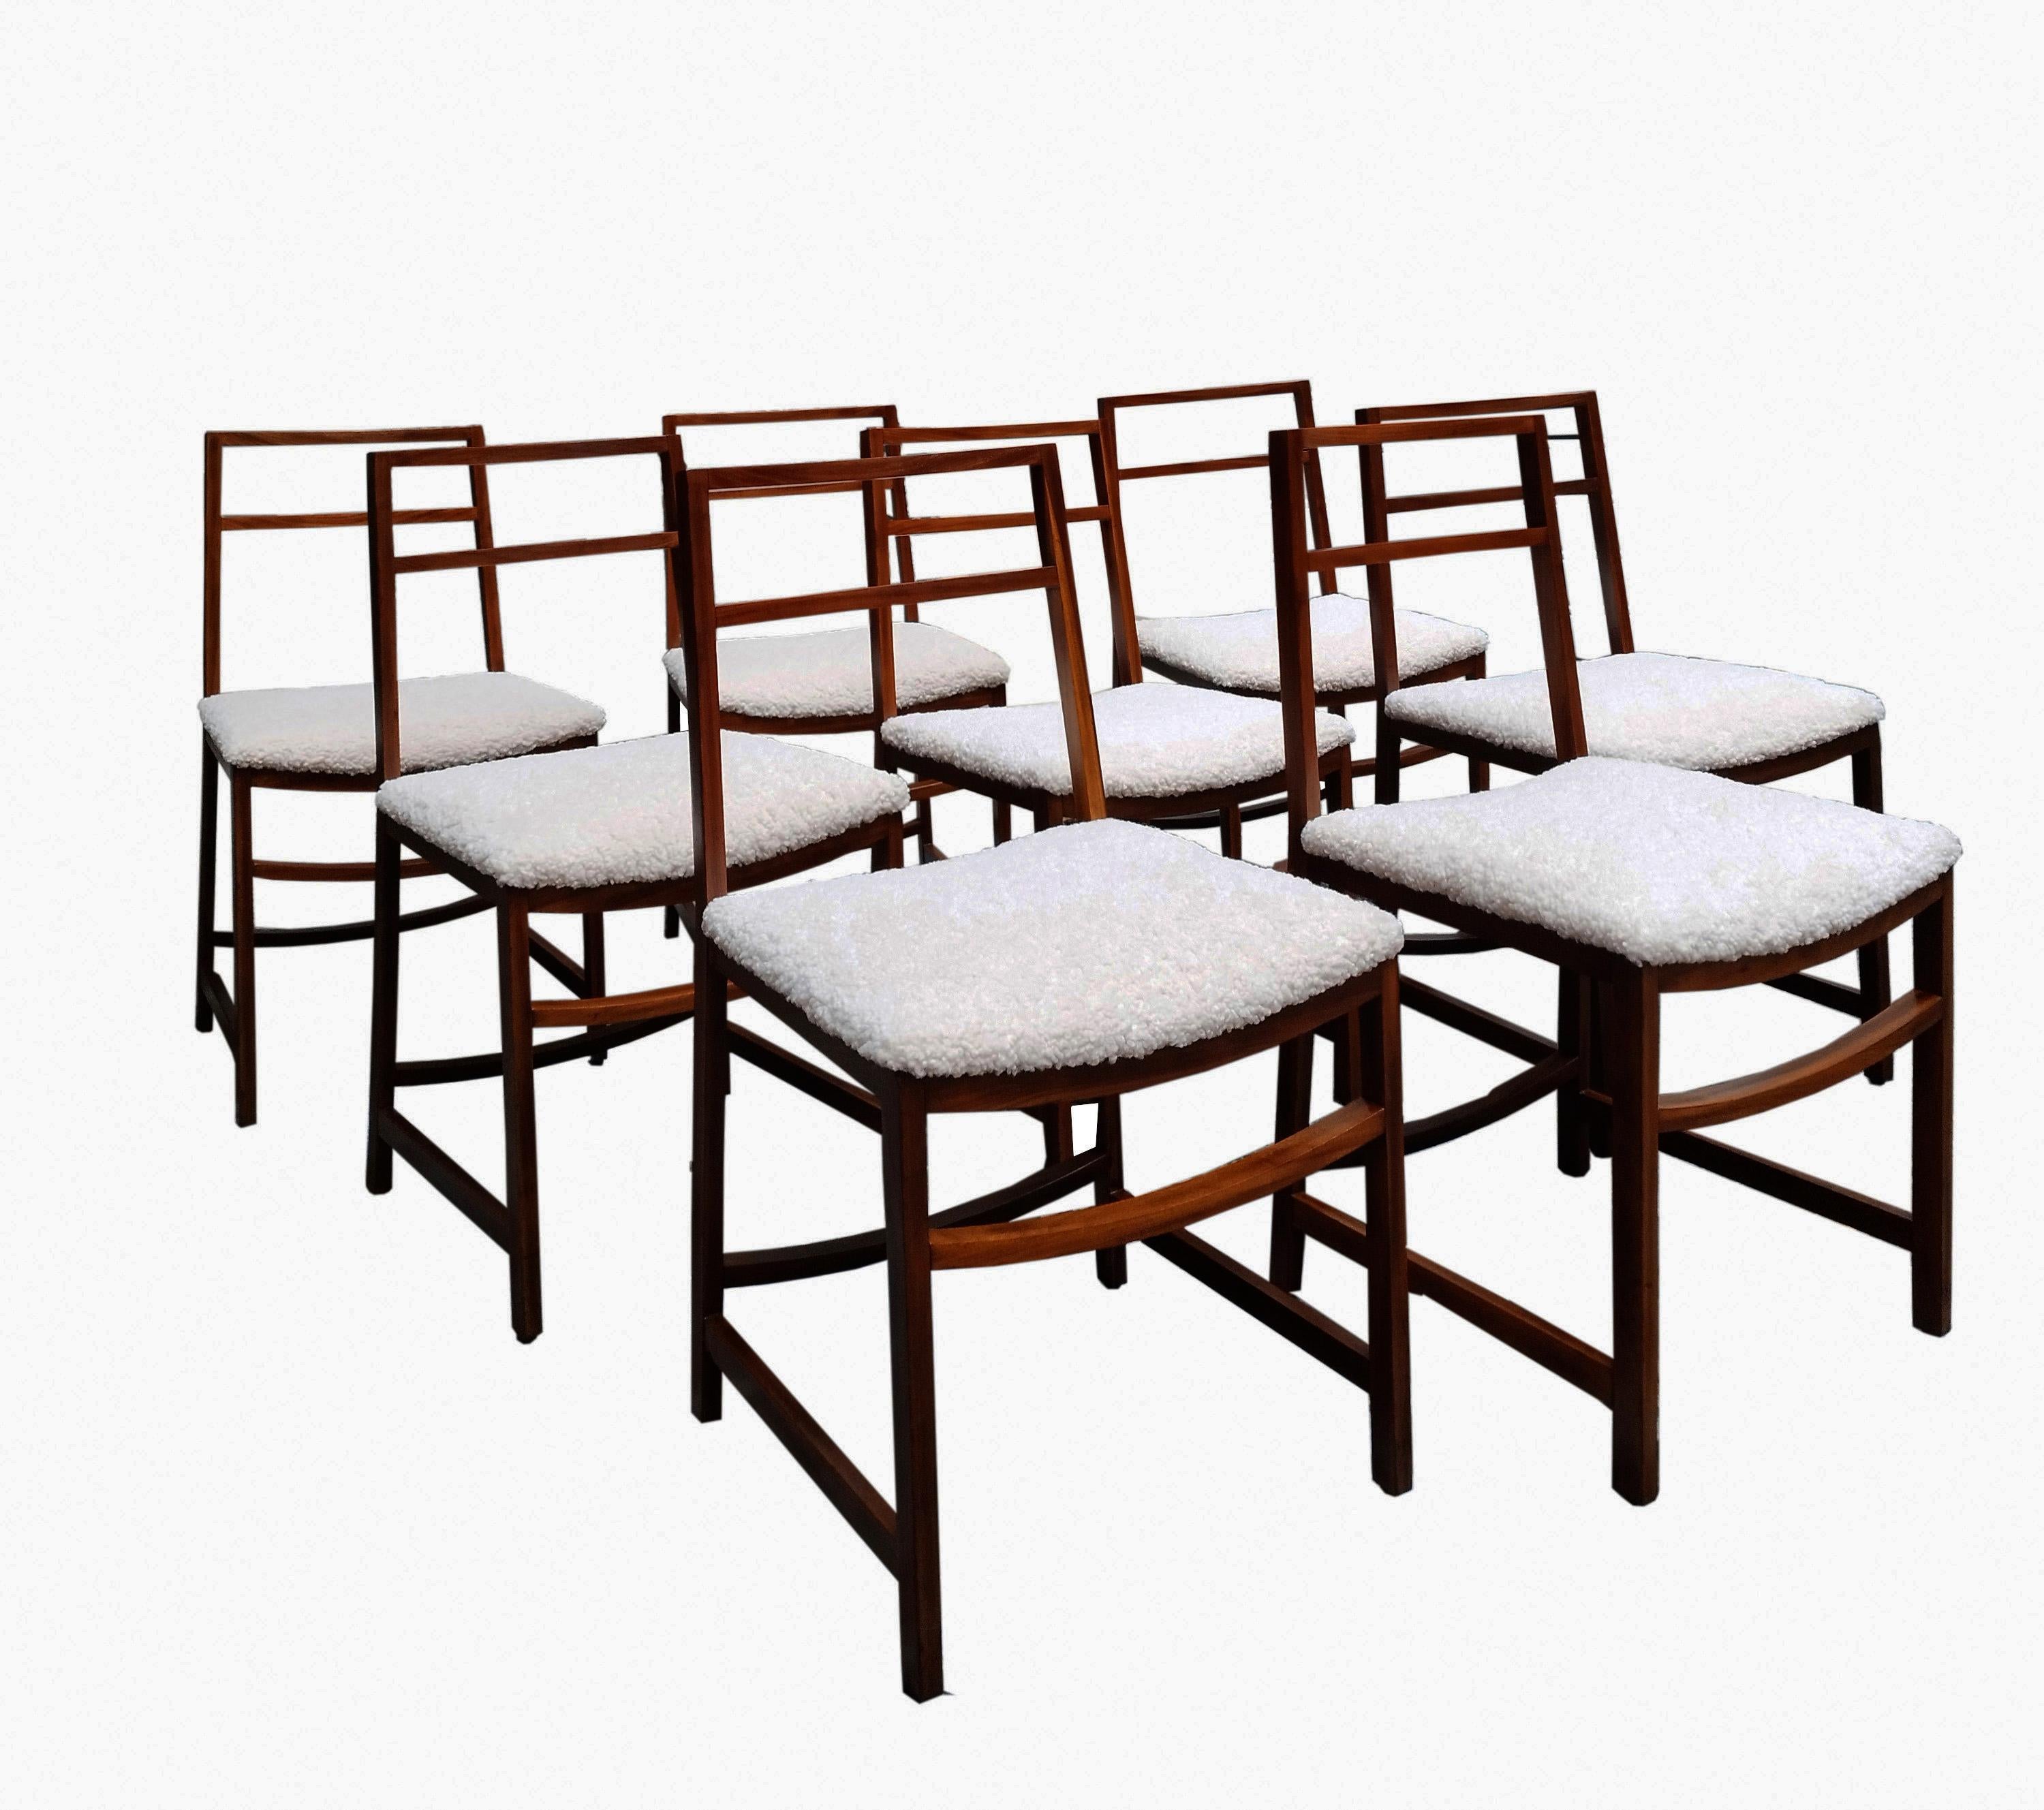 Stühle aus Holz und Boucle-Stoff von Renato Venturi, der diese außergewöhnlichen Stühle in den 1960er Jahren in Italien für MIM Rom entworfen hat. Diese fantastischen Stühle haben einen Massivholzrahmen und wunderschöne neue elfenbeinfarbene